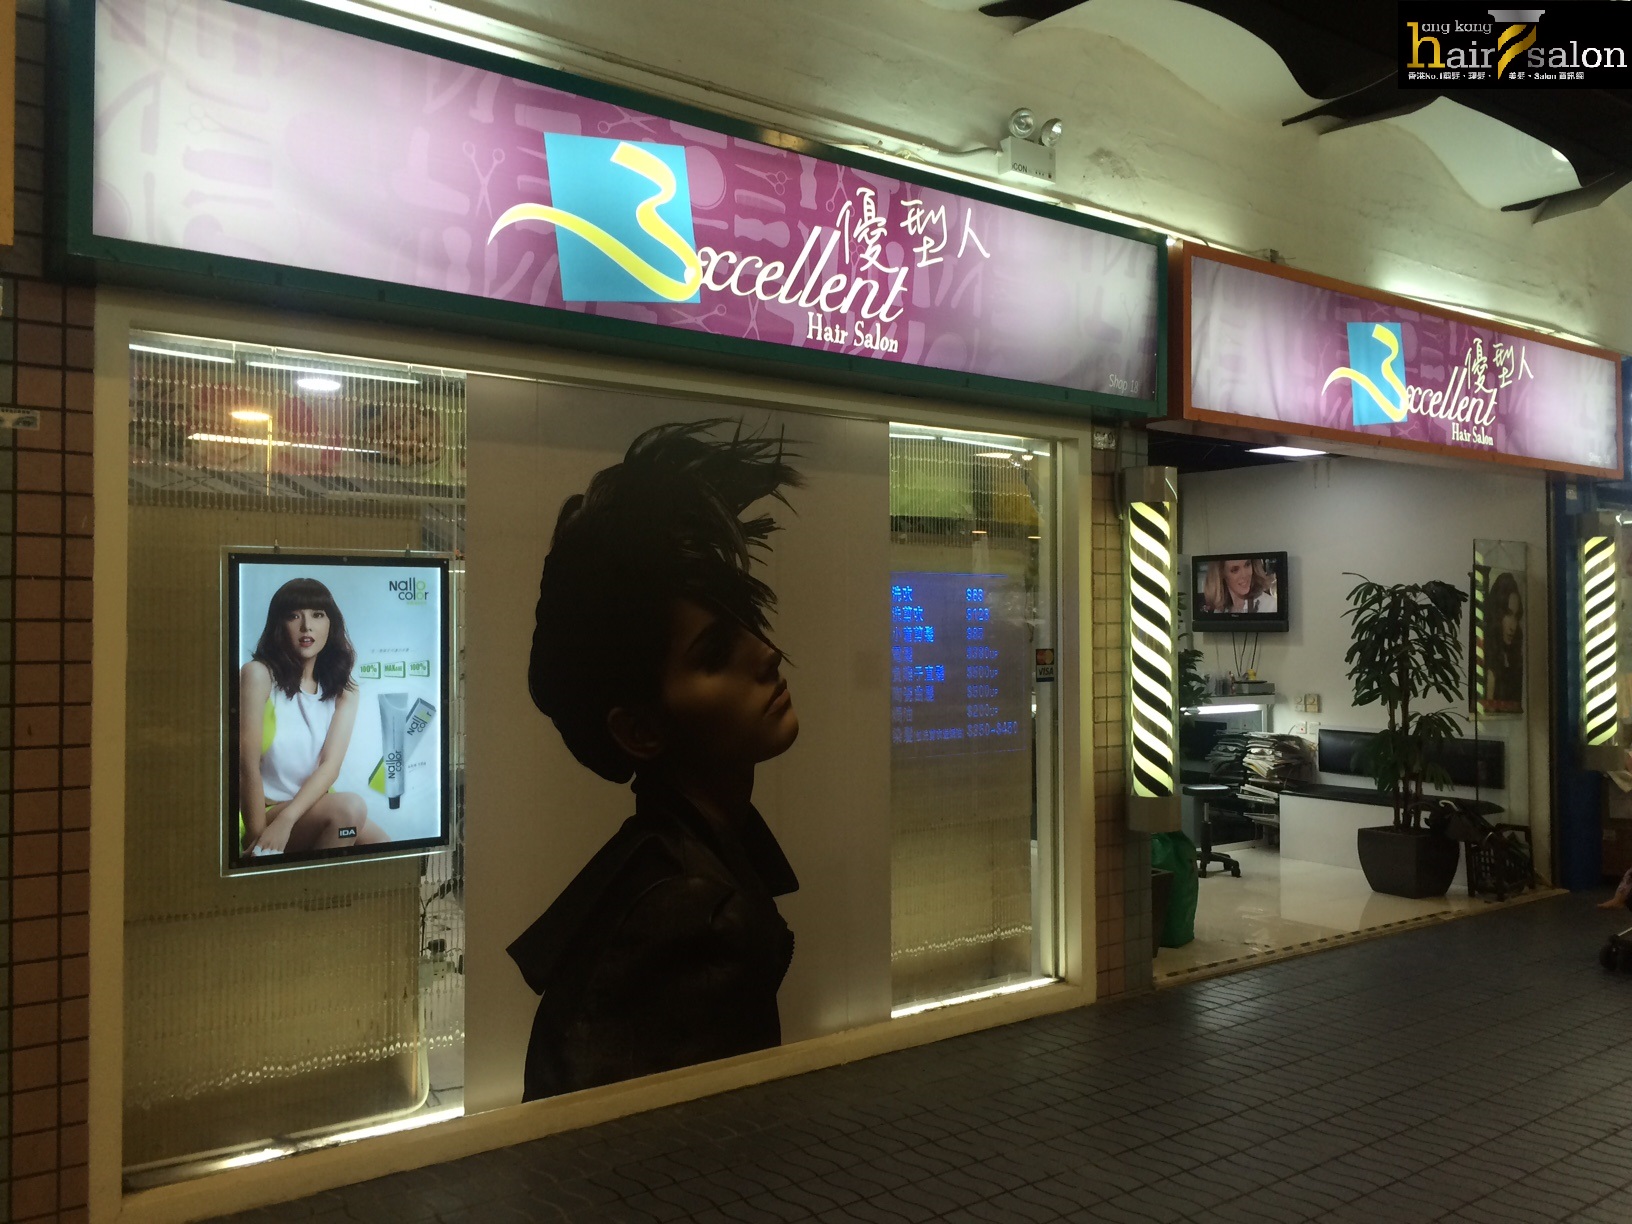 香港美髮網 HK Hair Salon 髮型屋Salon / 髮型師: 優型人 Excelent Hair Salon